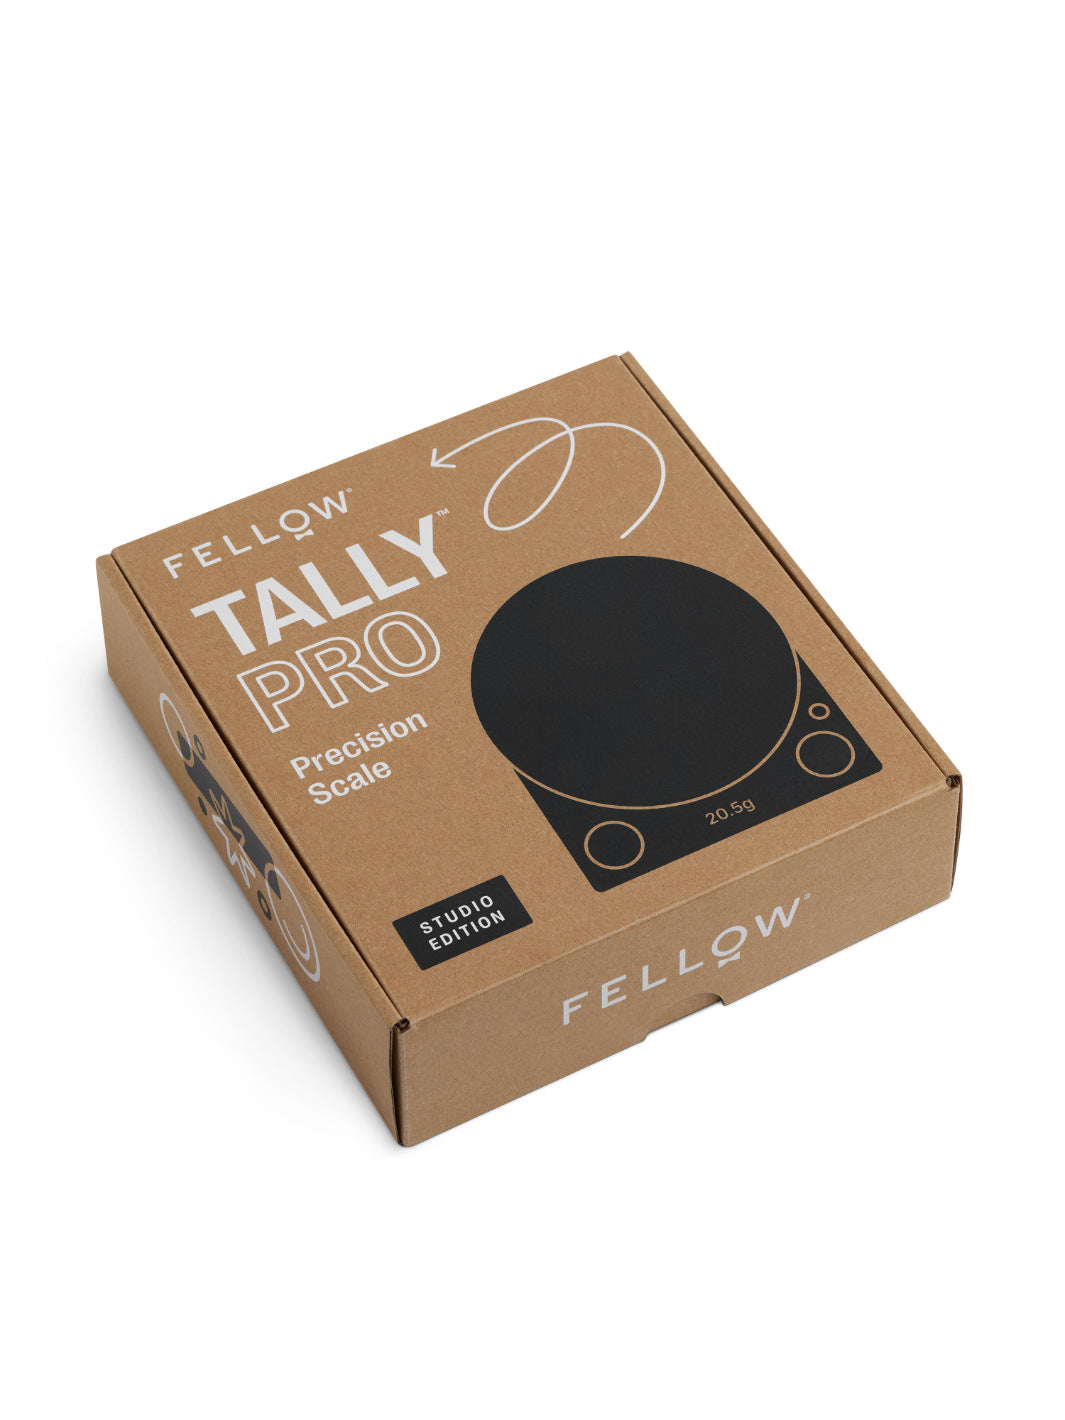 Fellow Tally Precision Pro Coffee Scale Studio Edition